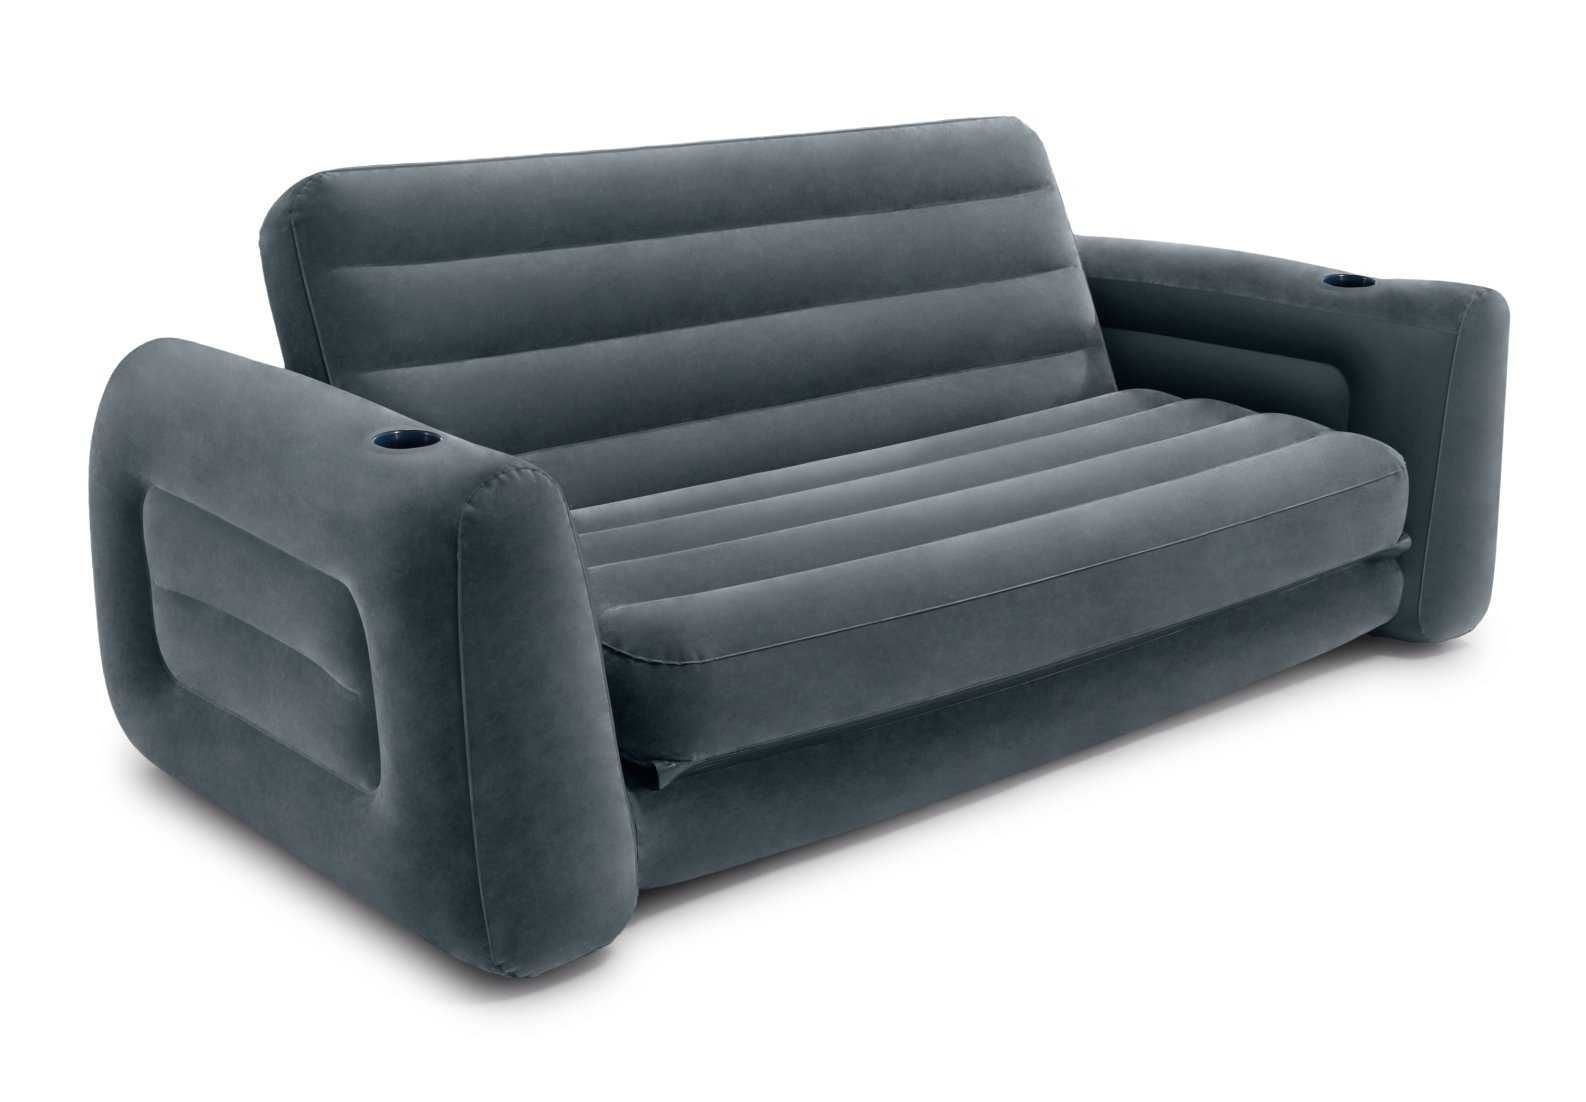 Dmuchany materac sofa dwuosobowa INTEX 66552 spanie i siedzenie 2w1